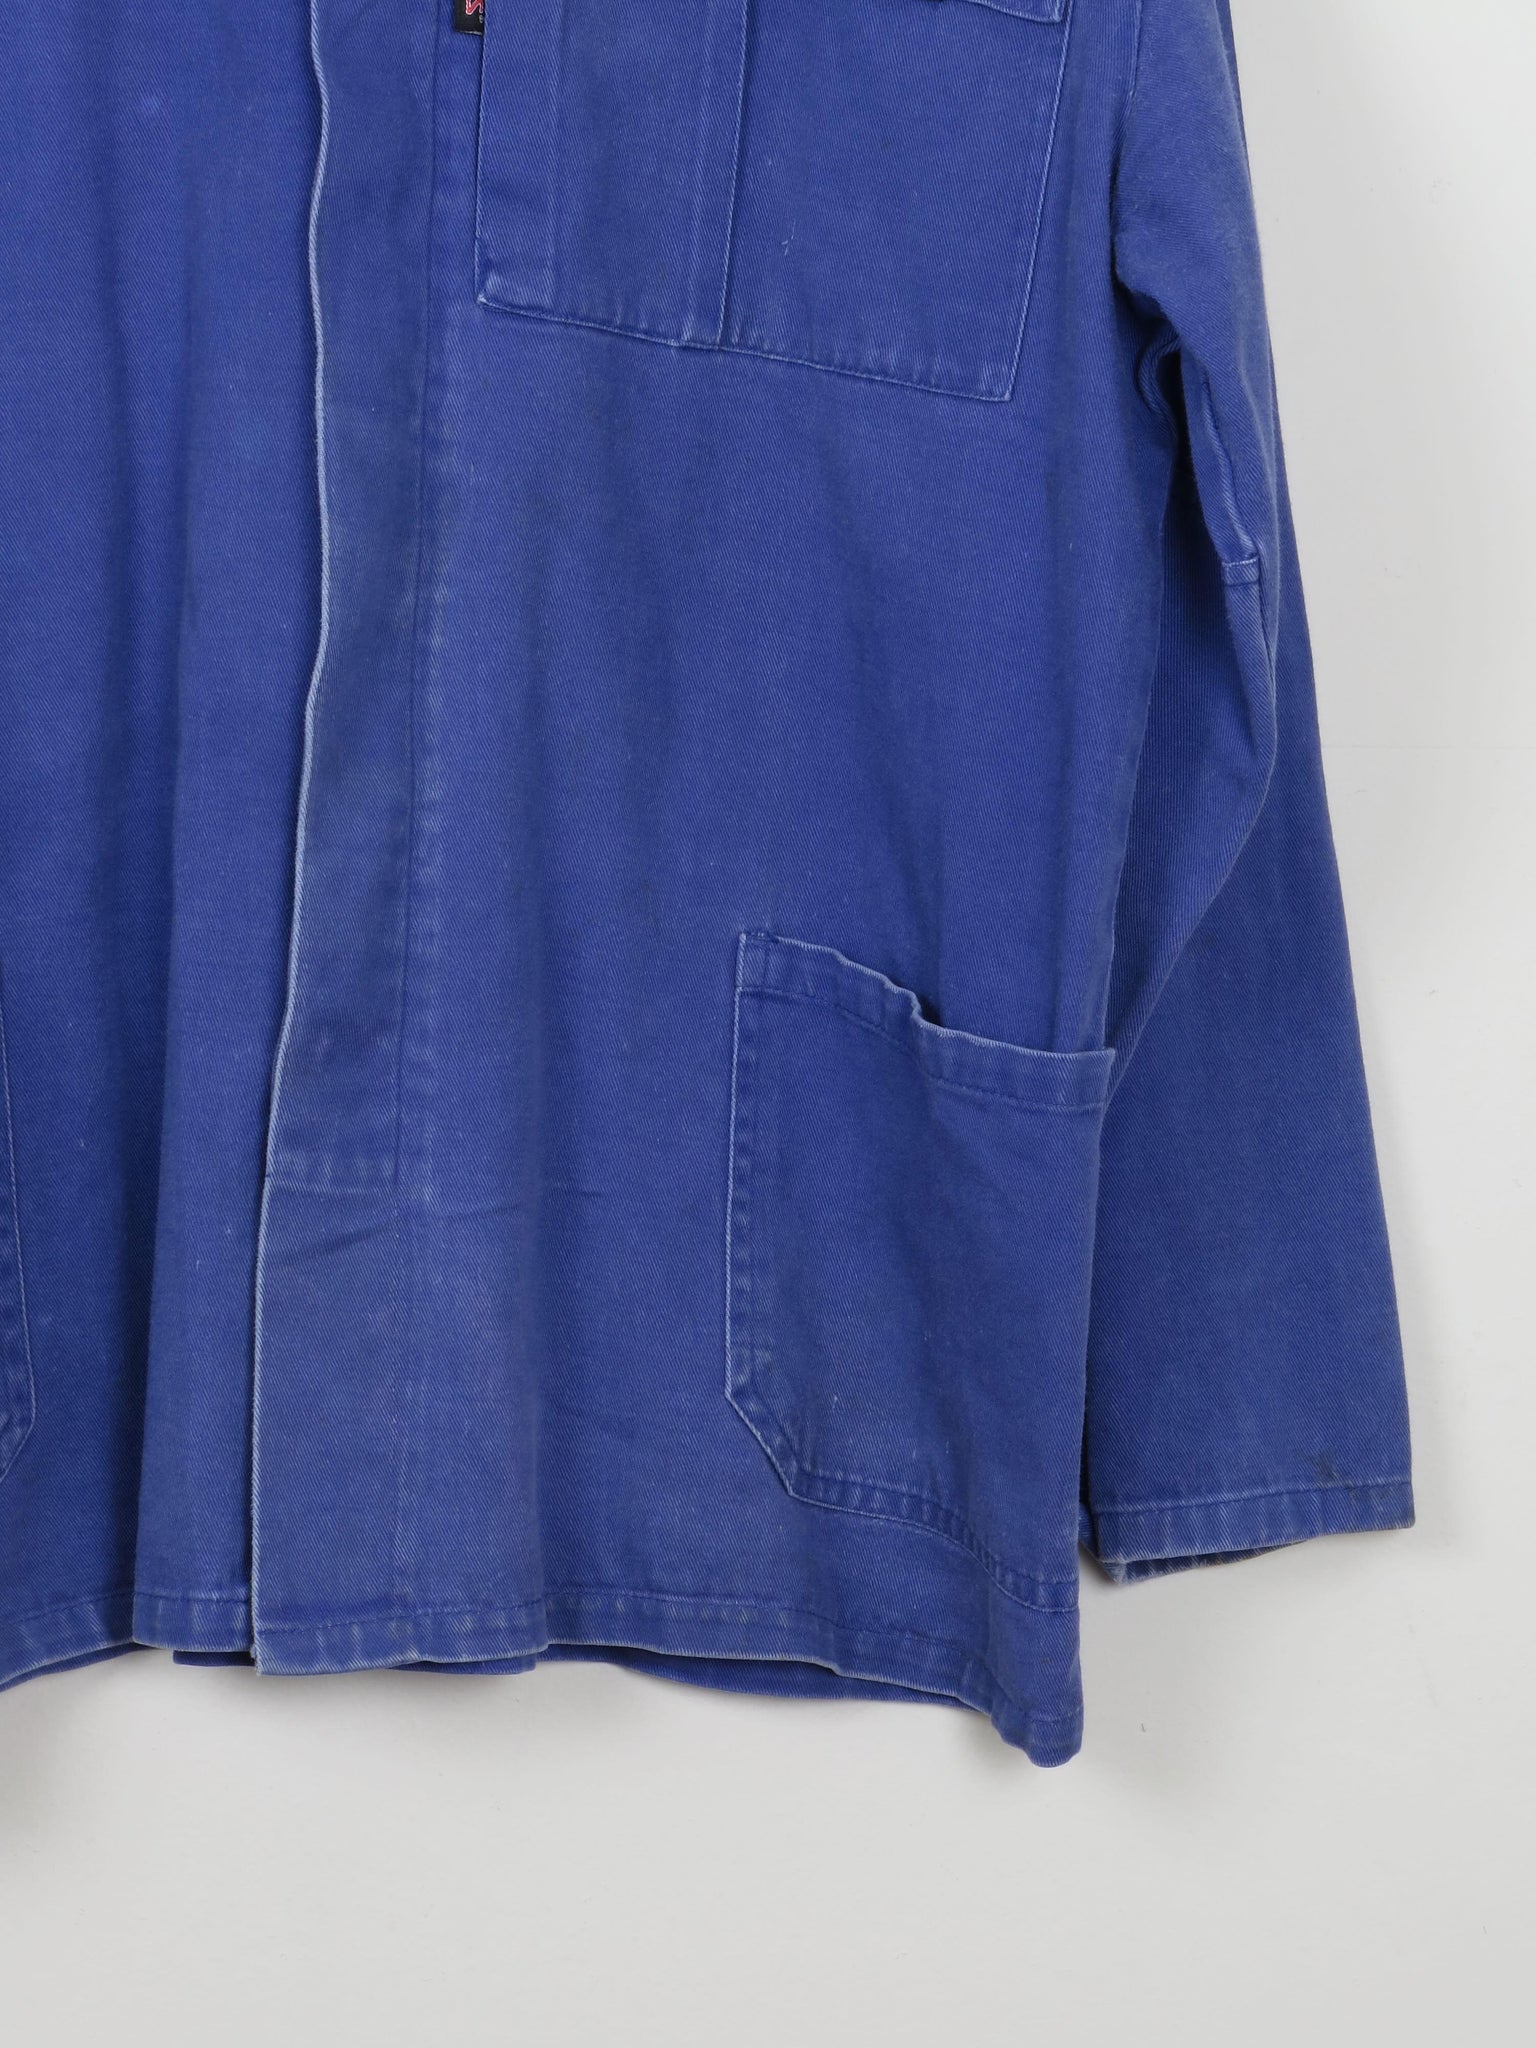 Men's Vintage Work Jacket Blue M - The Harlequin